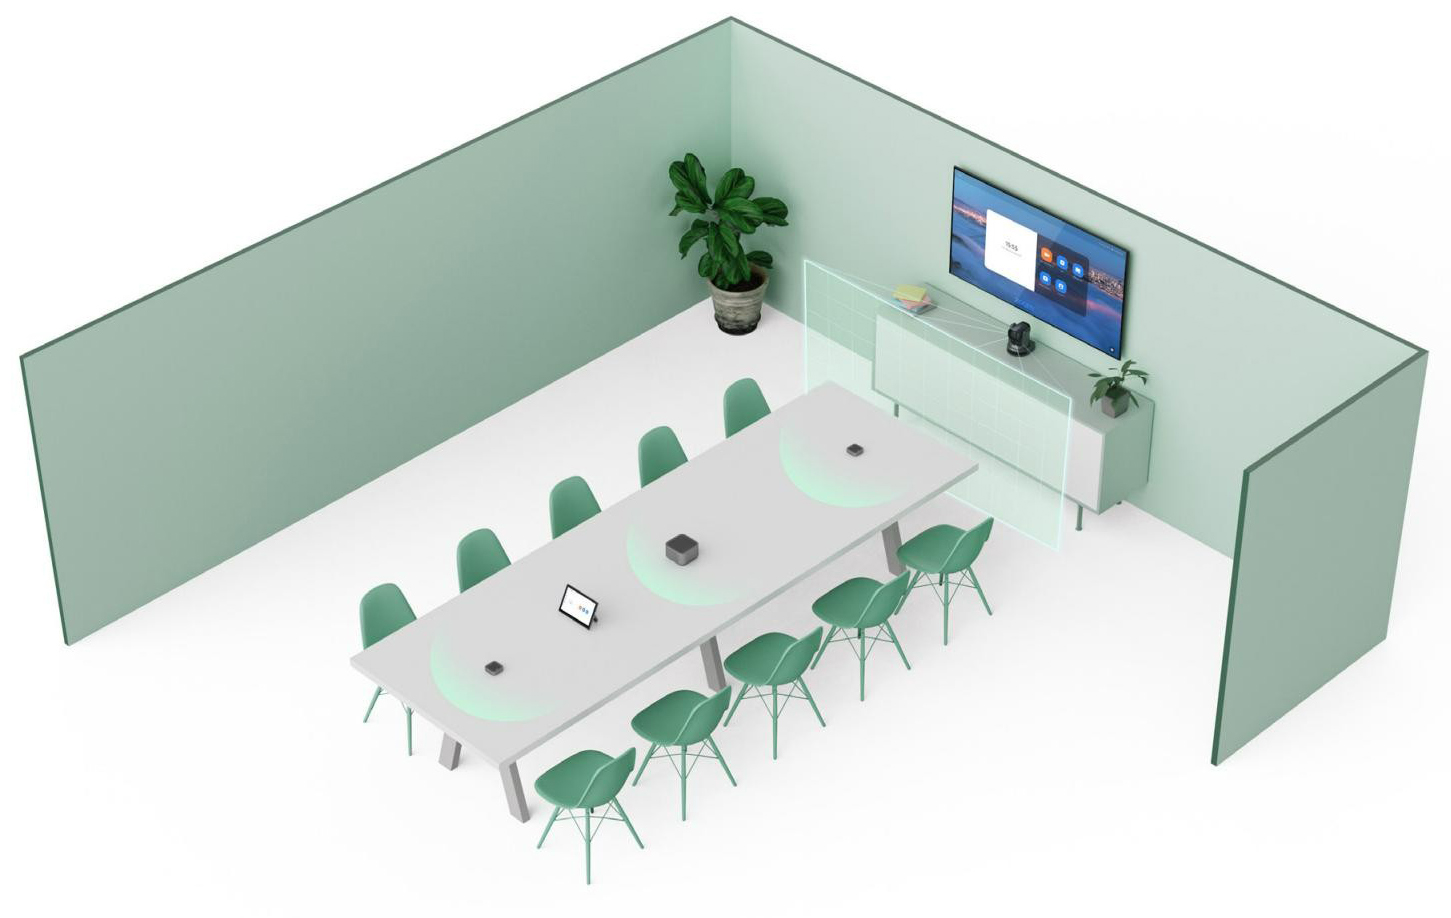 2、VHD维海德中型会议室解决方案-专业级视听体验.jpg